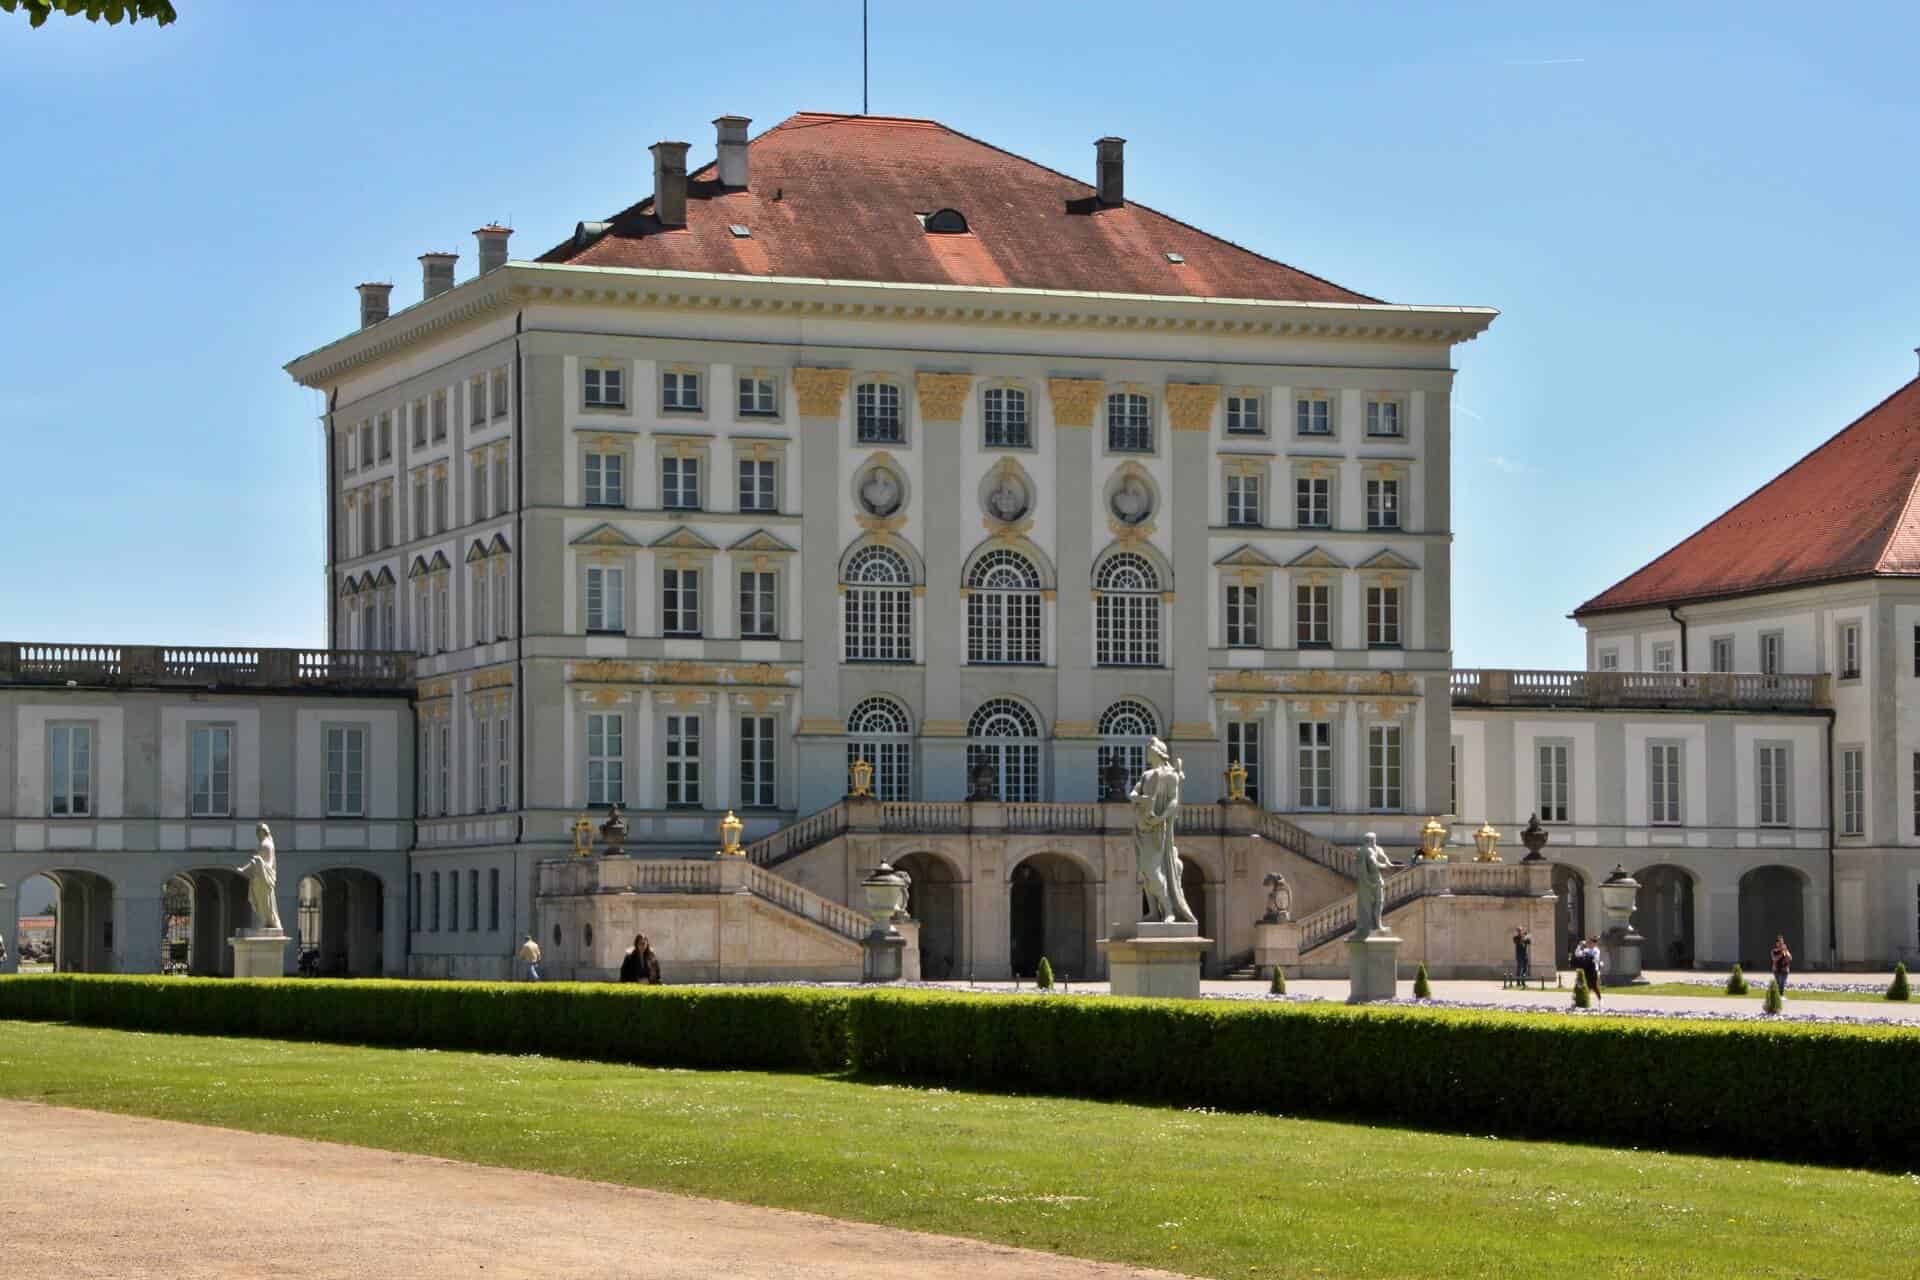 Nymphenburg Palace